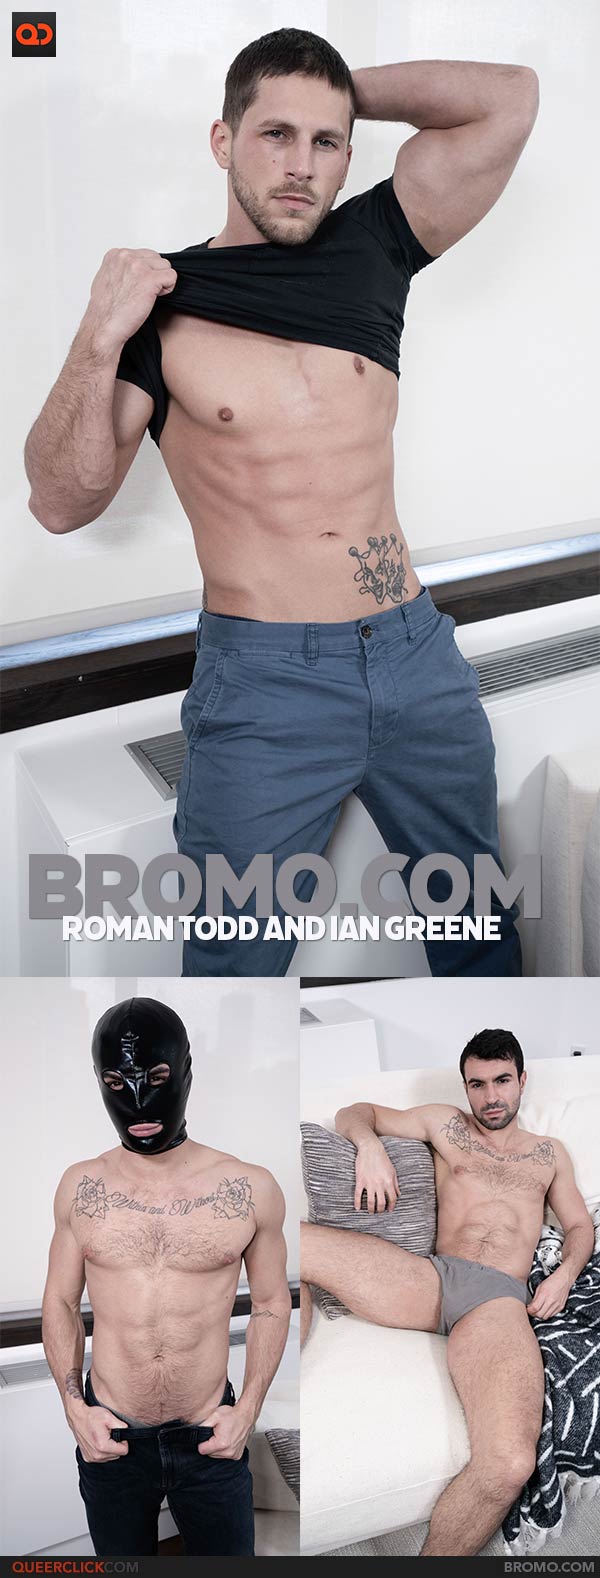 Bromo.com: Roman Todd and Ian Greene